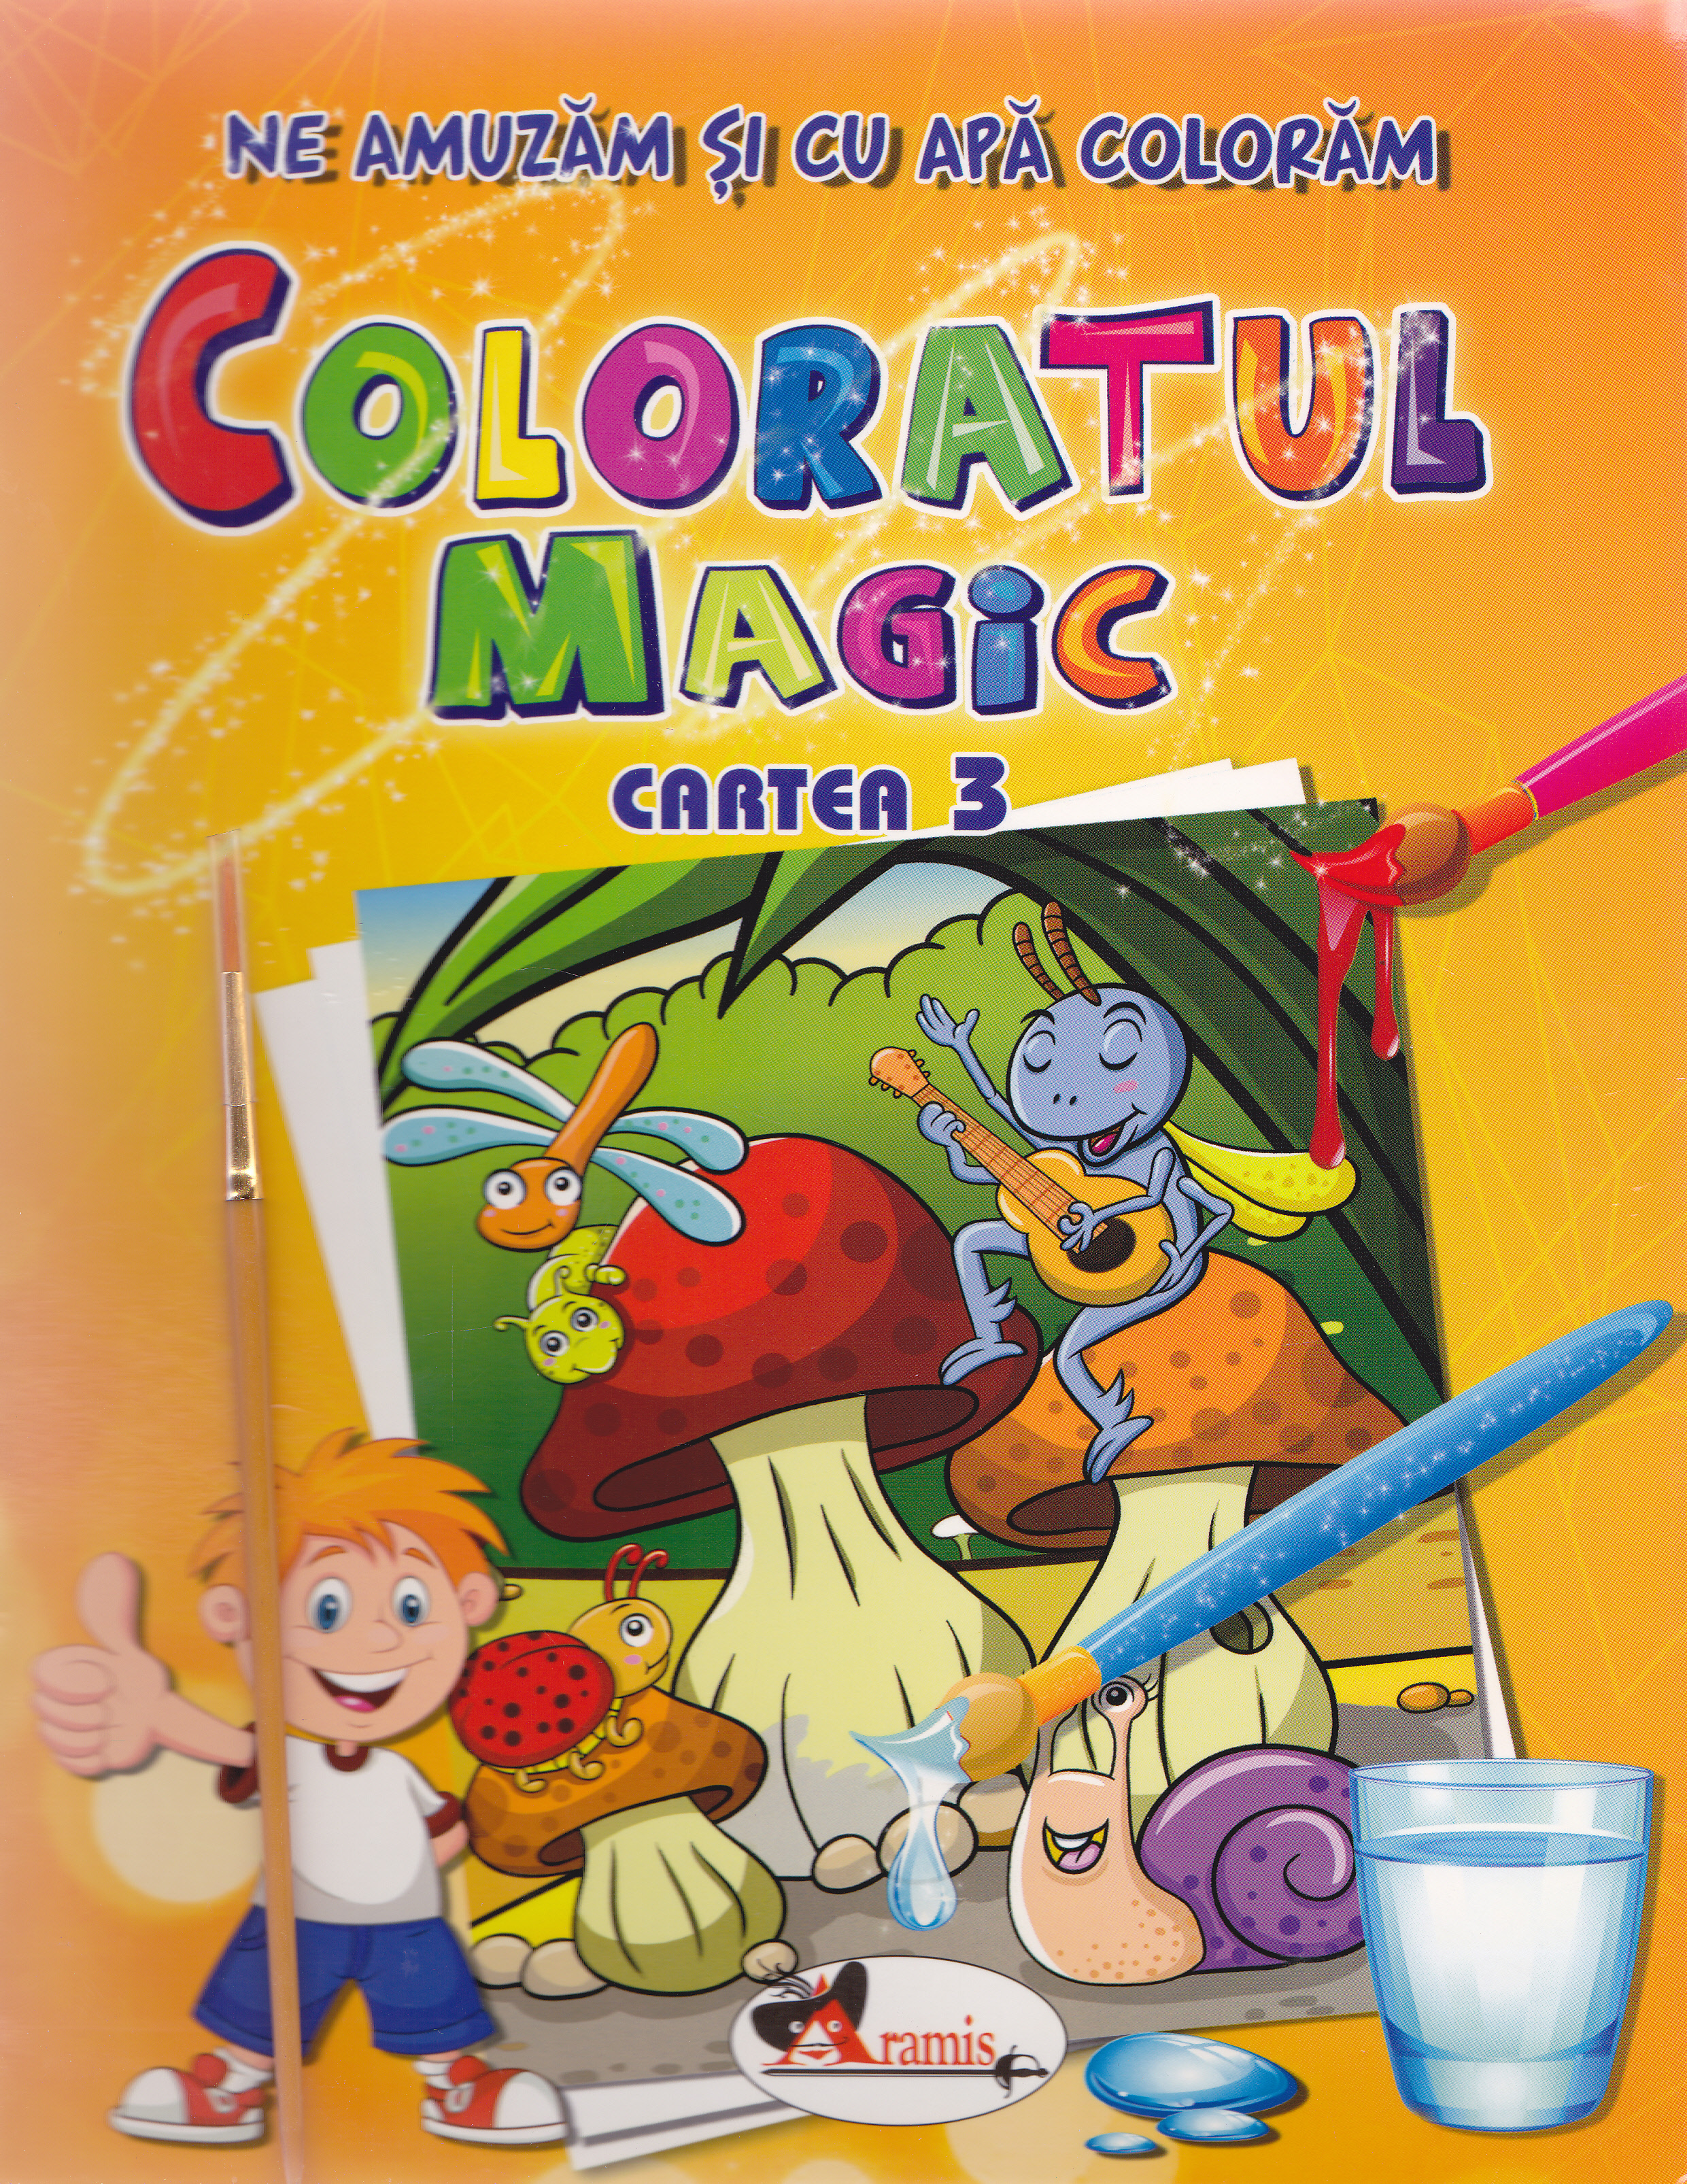 Coloratul magic cartea 3 - Ne amuzam si cu apa coloram